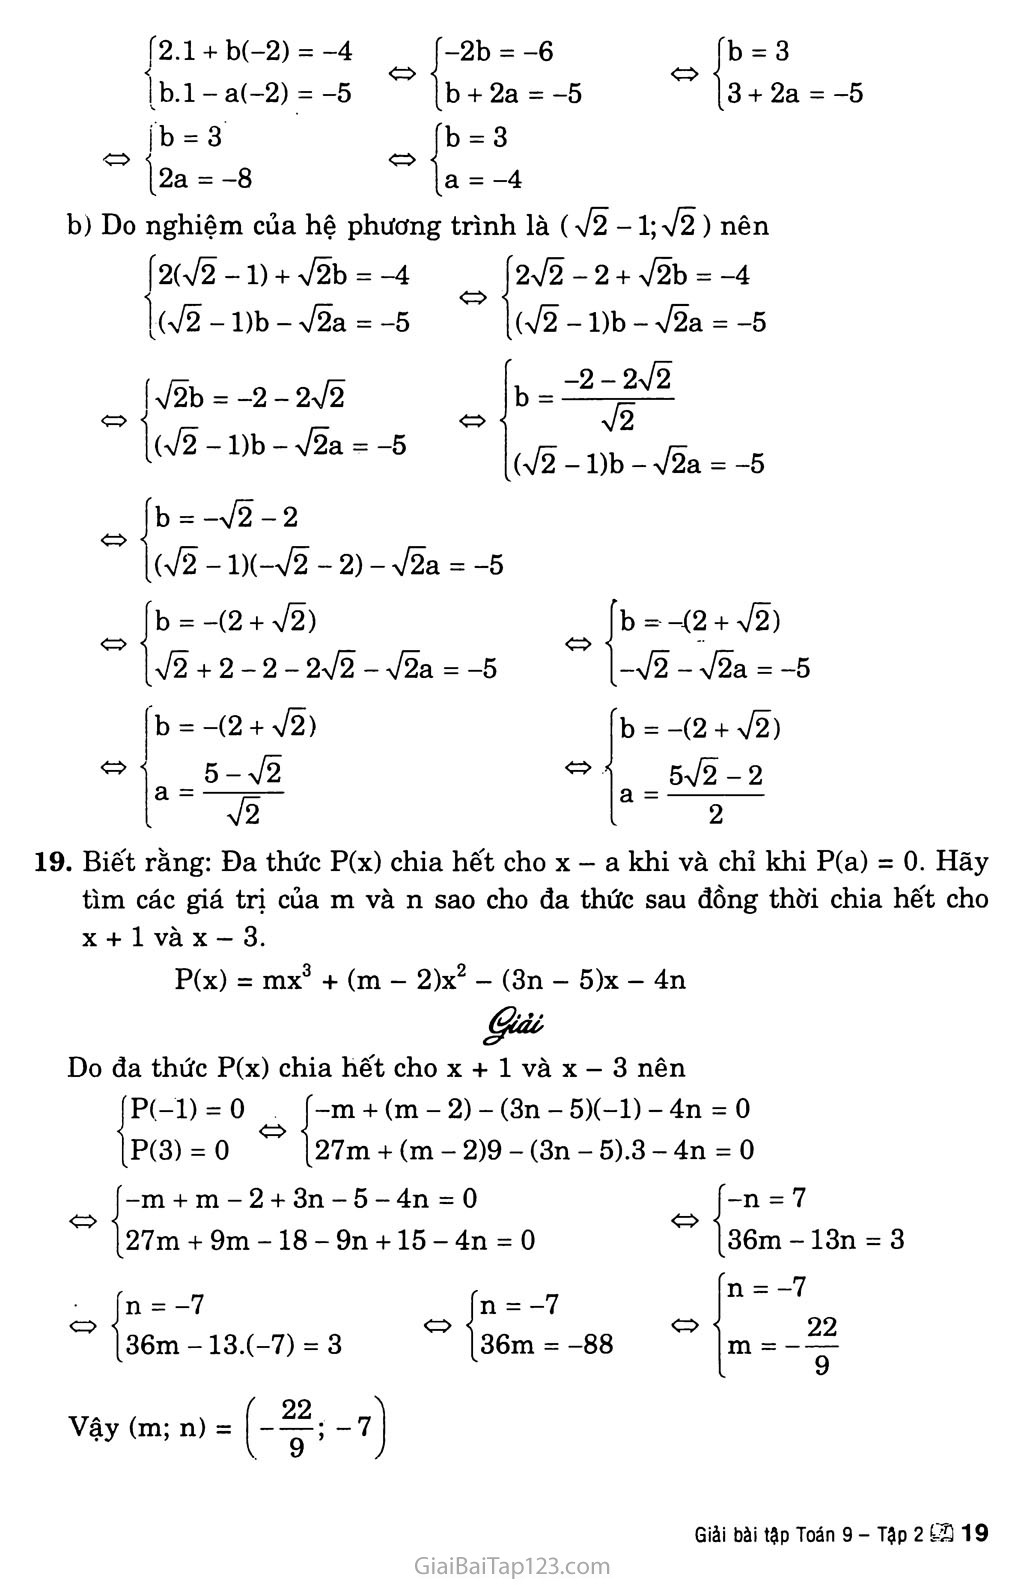 Bài 3. Giải hệ phương trình bằng phương pháp thay thế trang 8